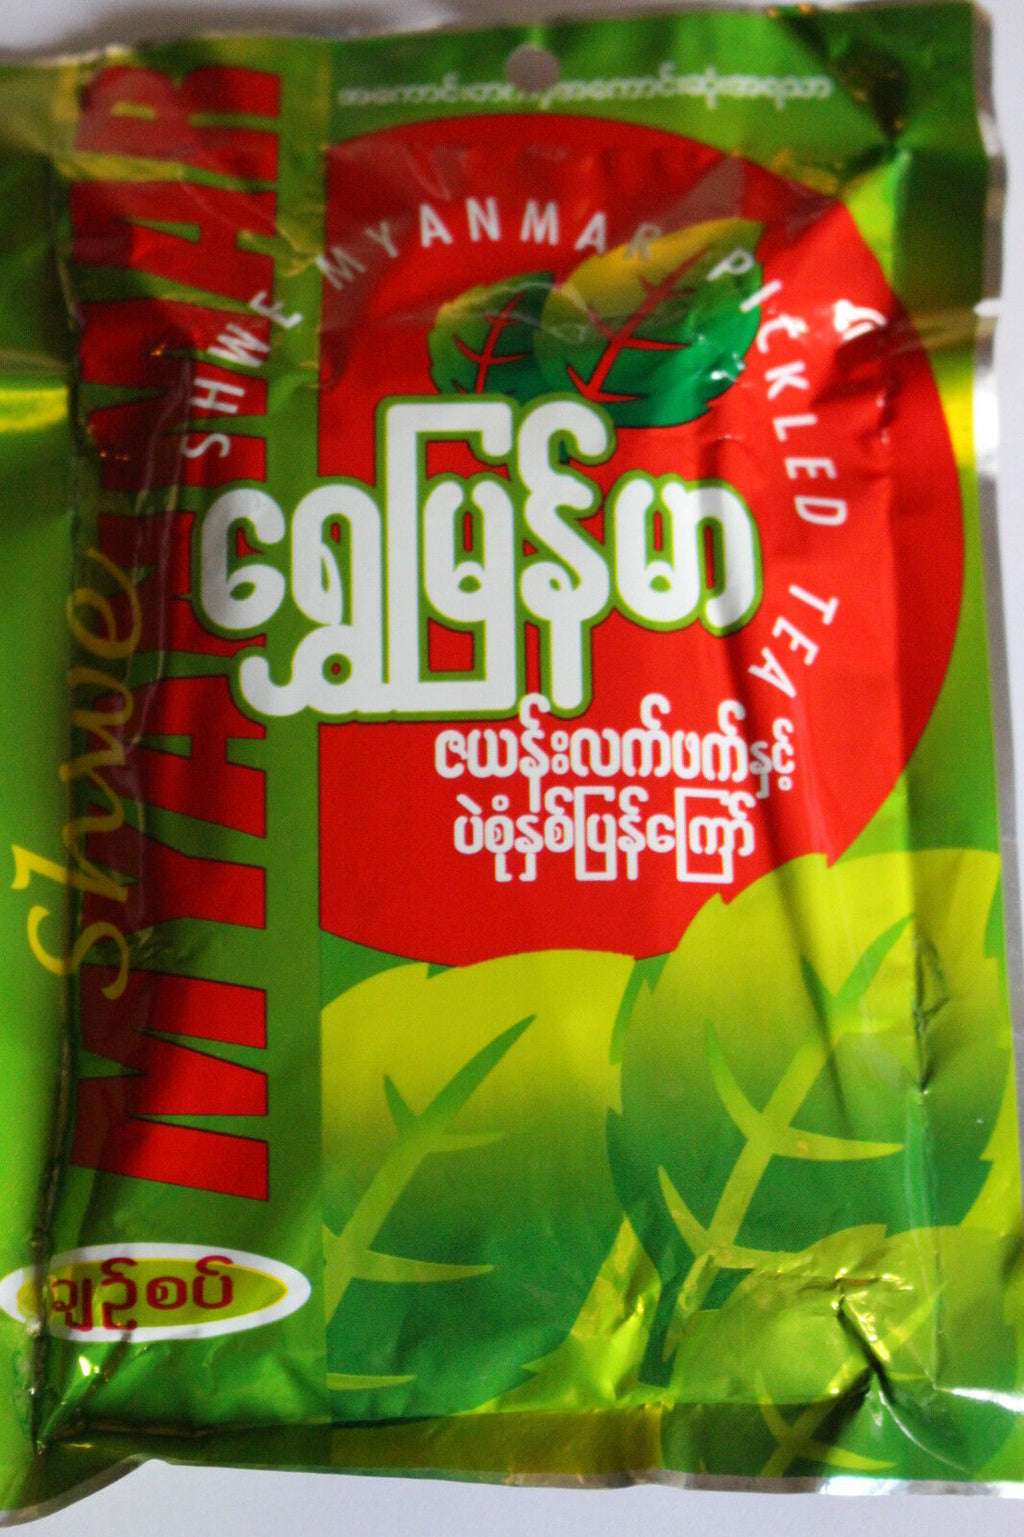 Shwe Brand LaPhet (LePhet) - Myanmar (Burmese) Fermented Tea - 10 Packs